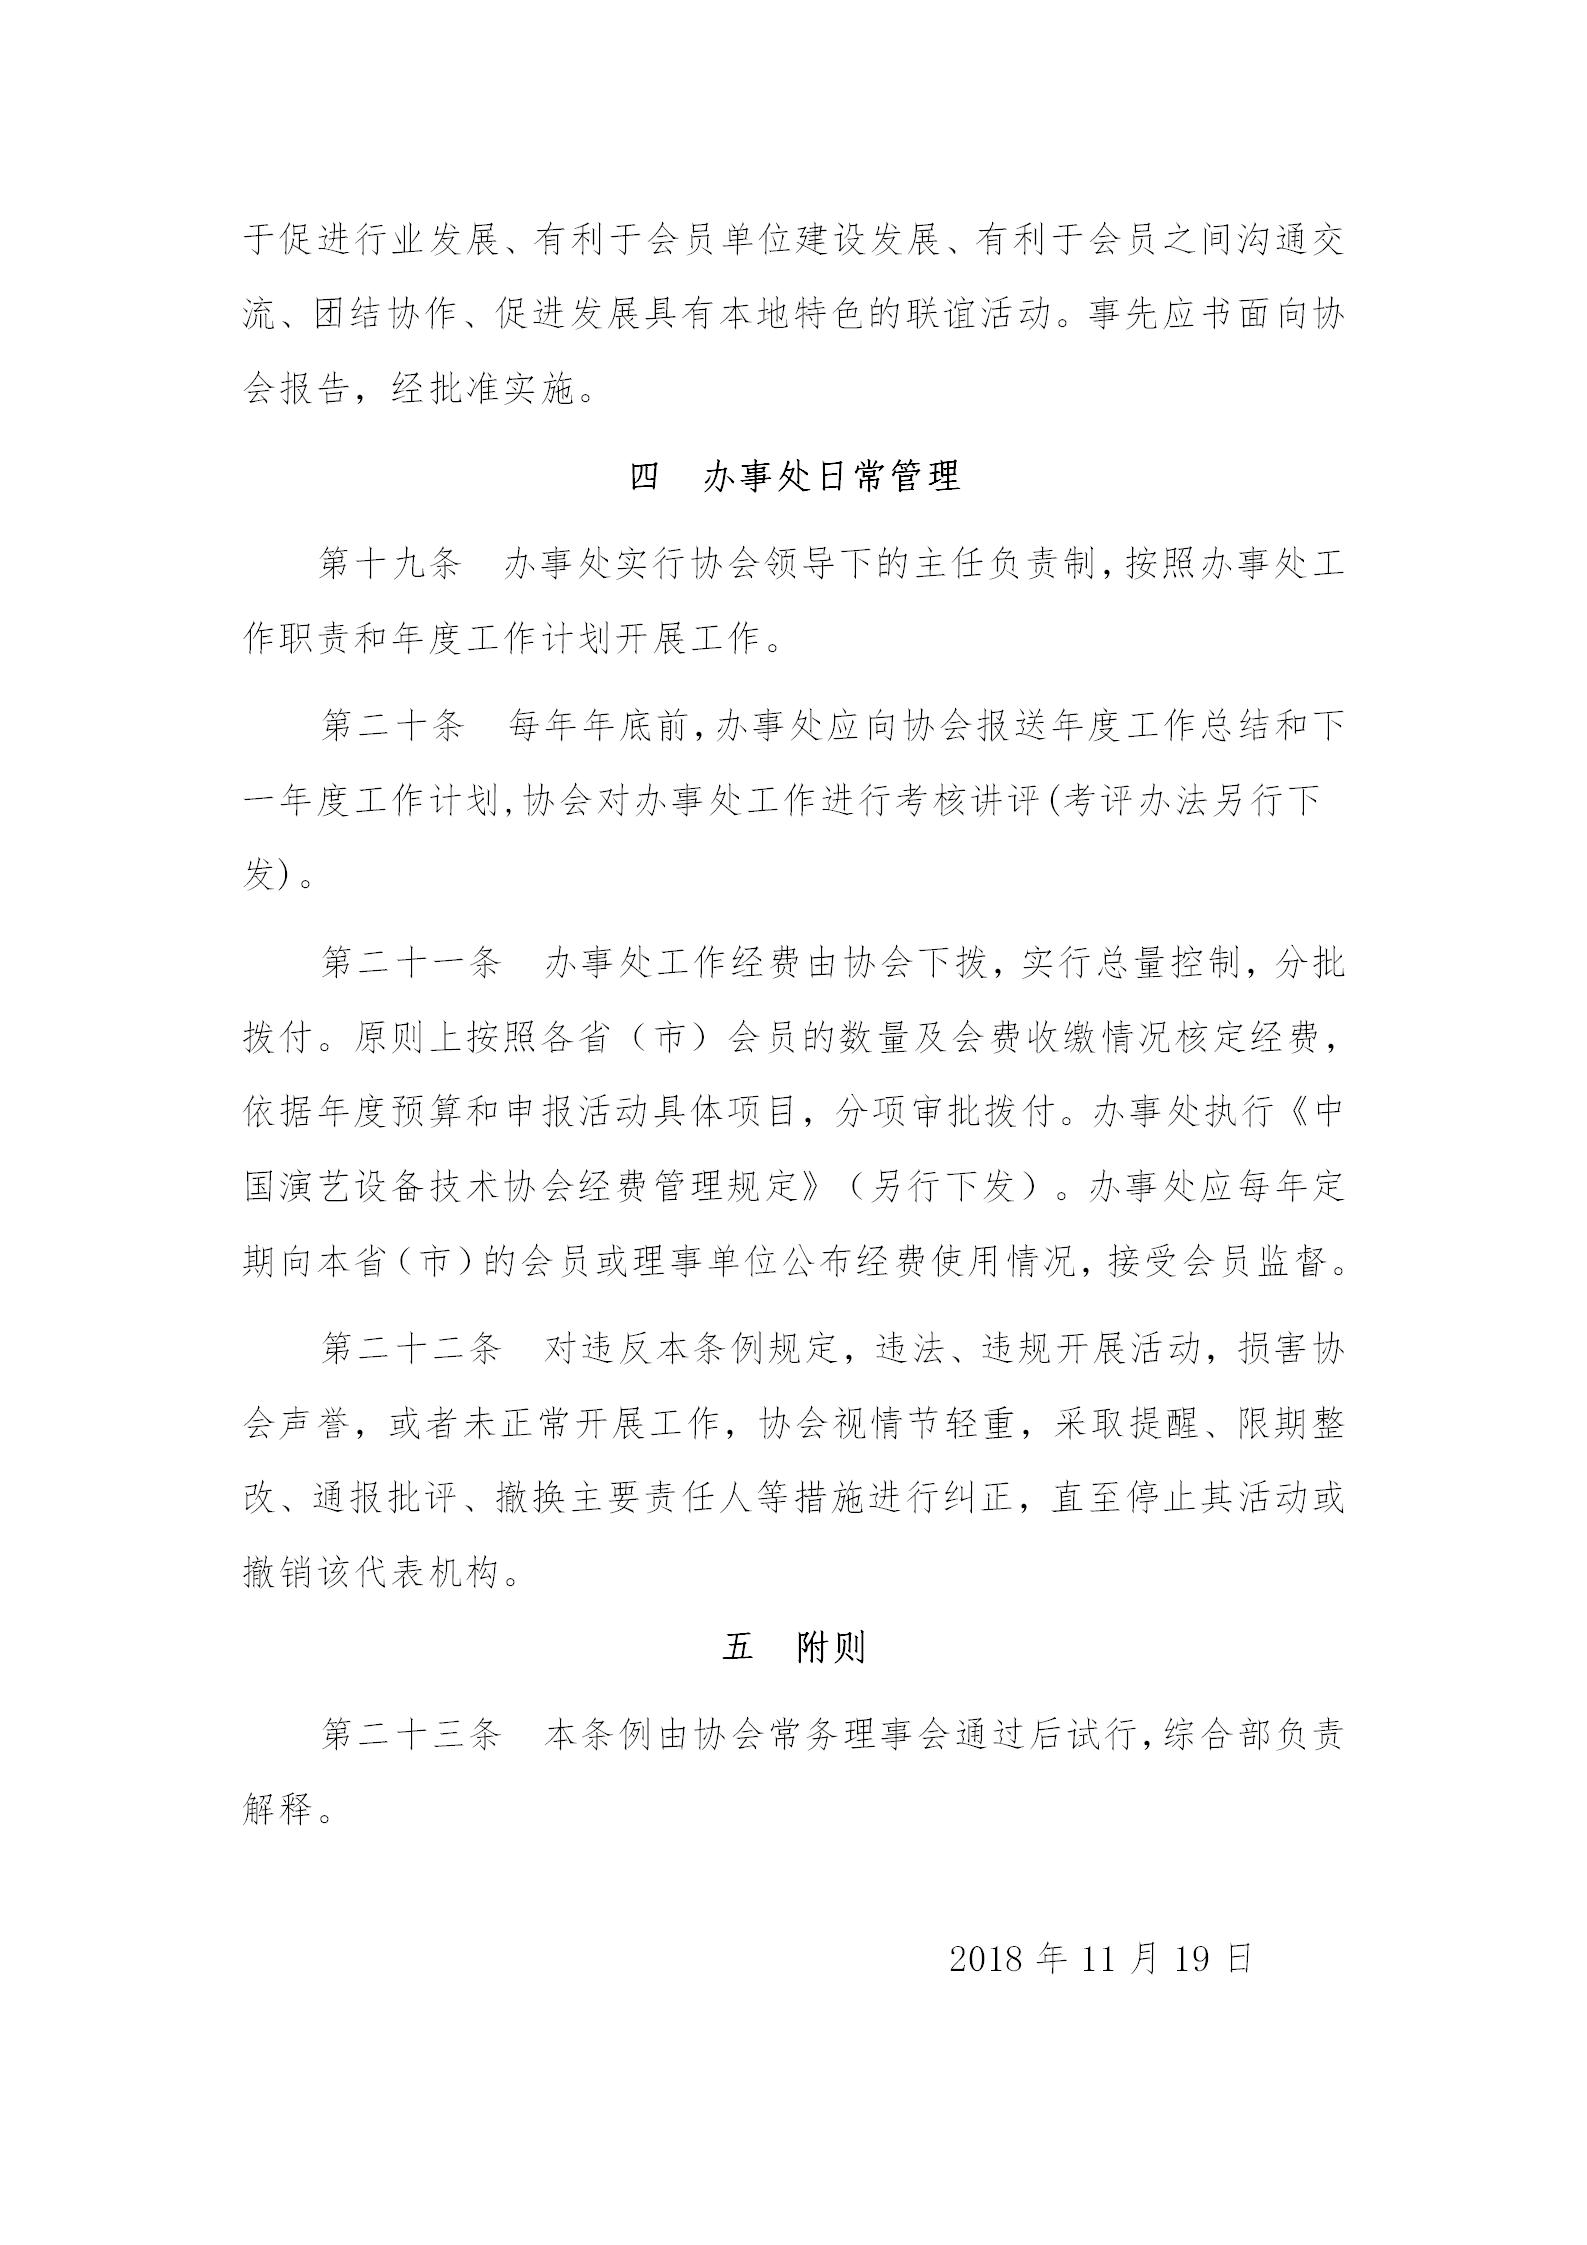 中国演艺设备技术协会办事处工作条例_04.jpg